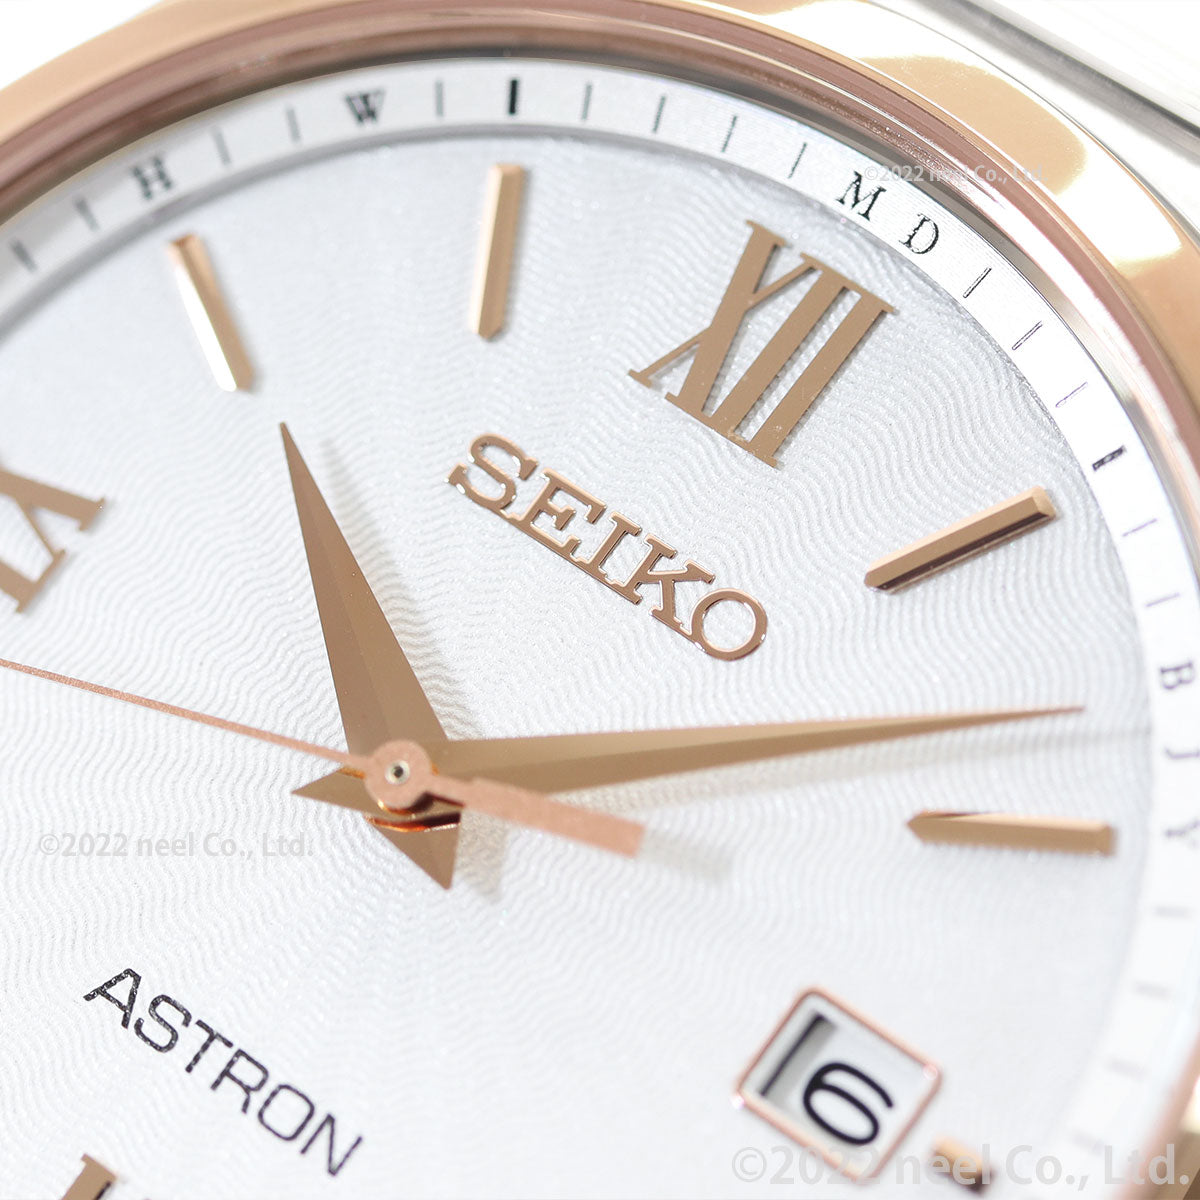 セイコー アストロン SEIKO ASTRON ソーラー電波ライン 電波時計 腕時計 メンズ SBXY034